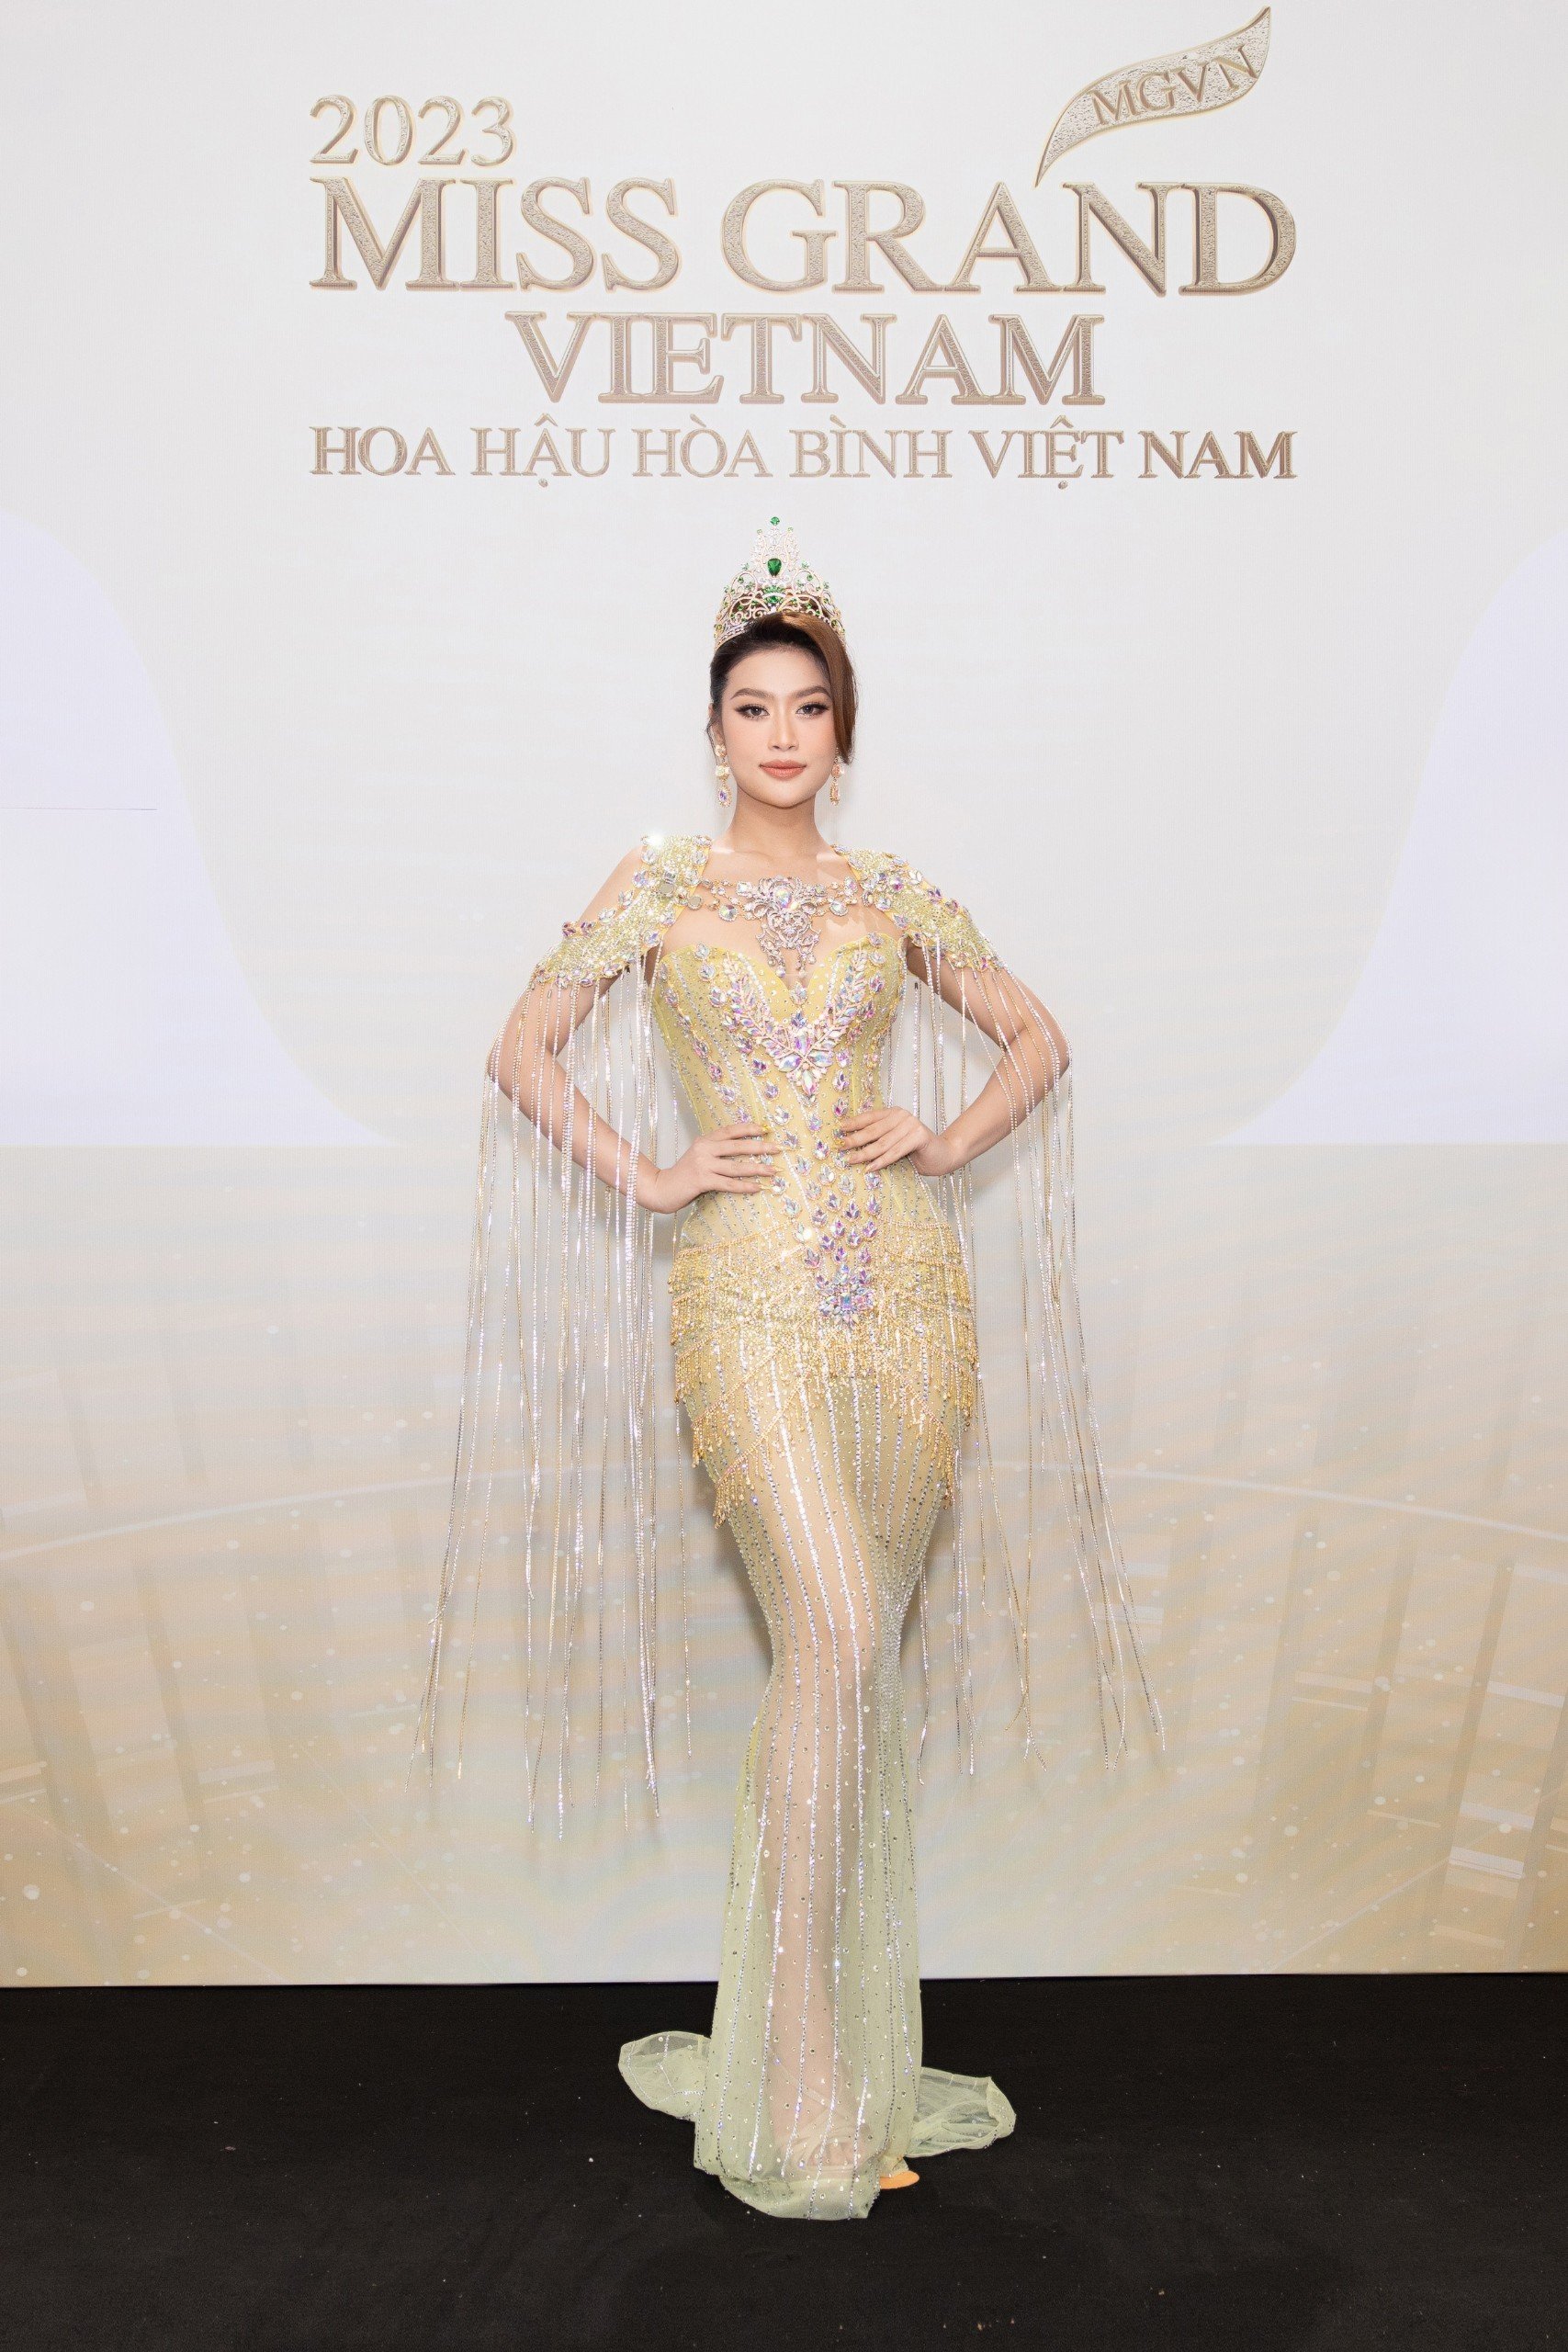 Thảm đỏ chung khảo toàn quốc Miss Grand Vietnam 2023: Huỳnh Minh Kiên khoe đường cong, Thuỳ Tiên kín đáo vẫn đẹp - ảnh 1